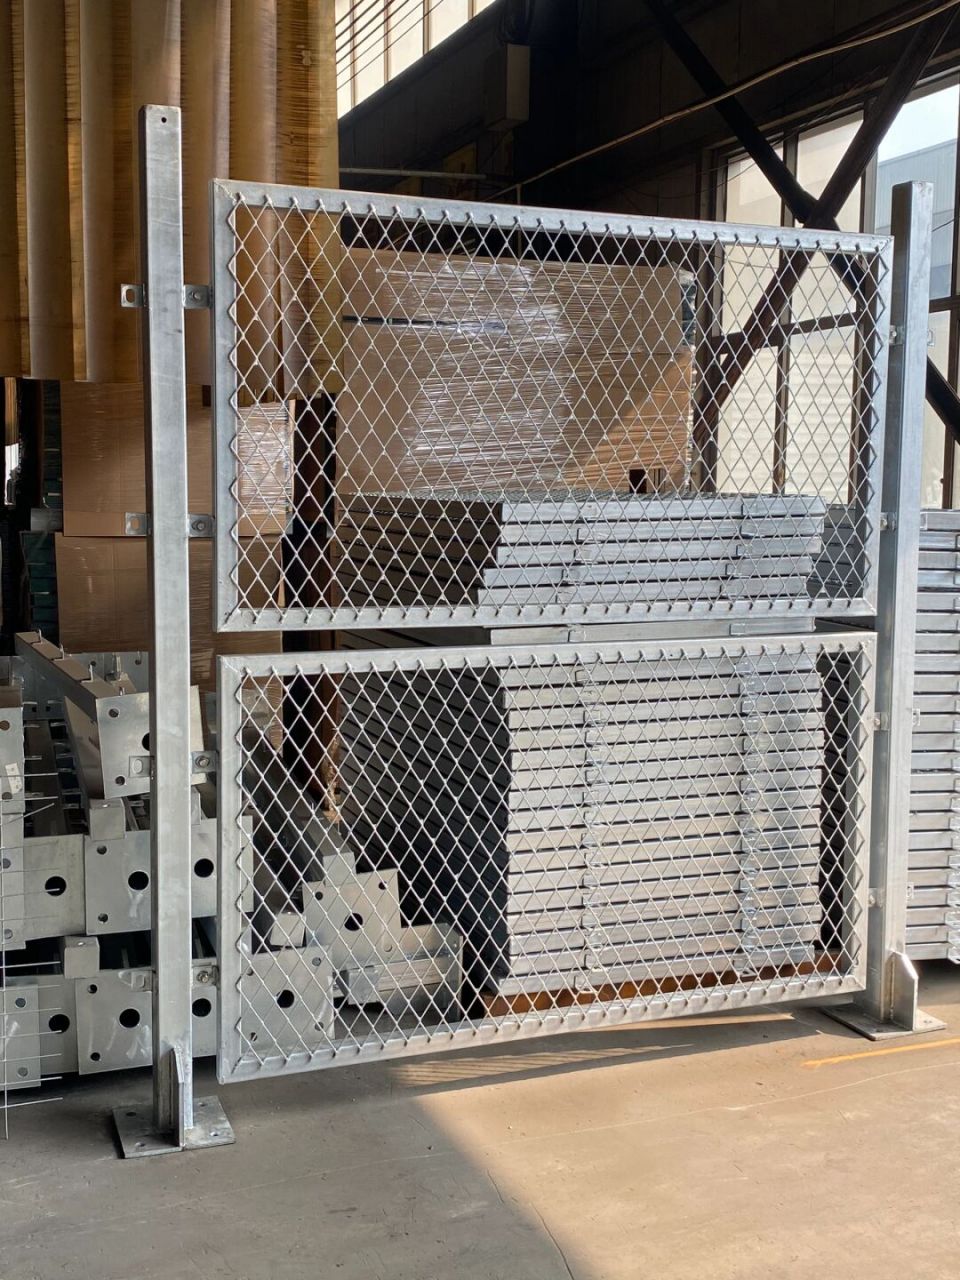 钢板网护栏 钢板网护栏又称防眩网,既可保证防眩设施的连续性和横向通